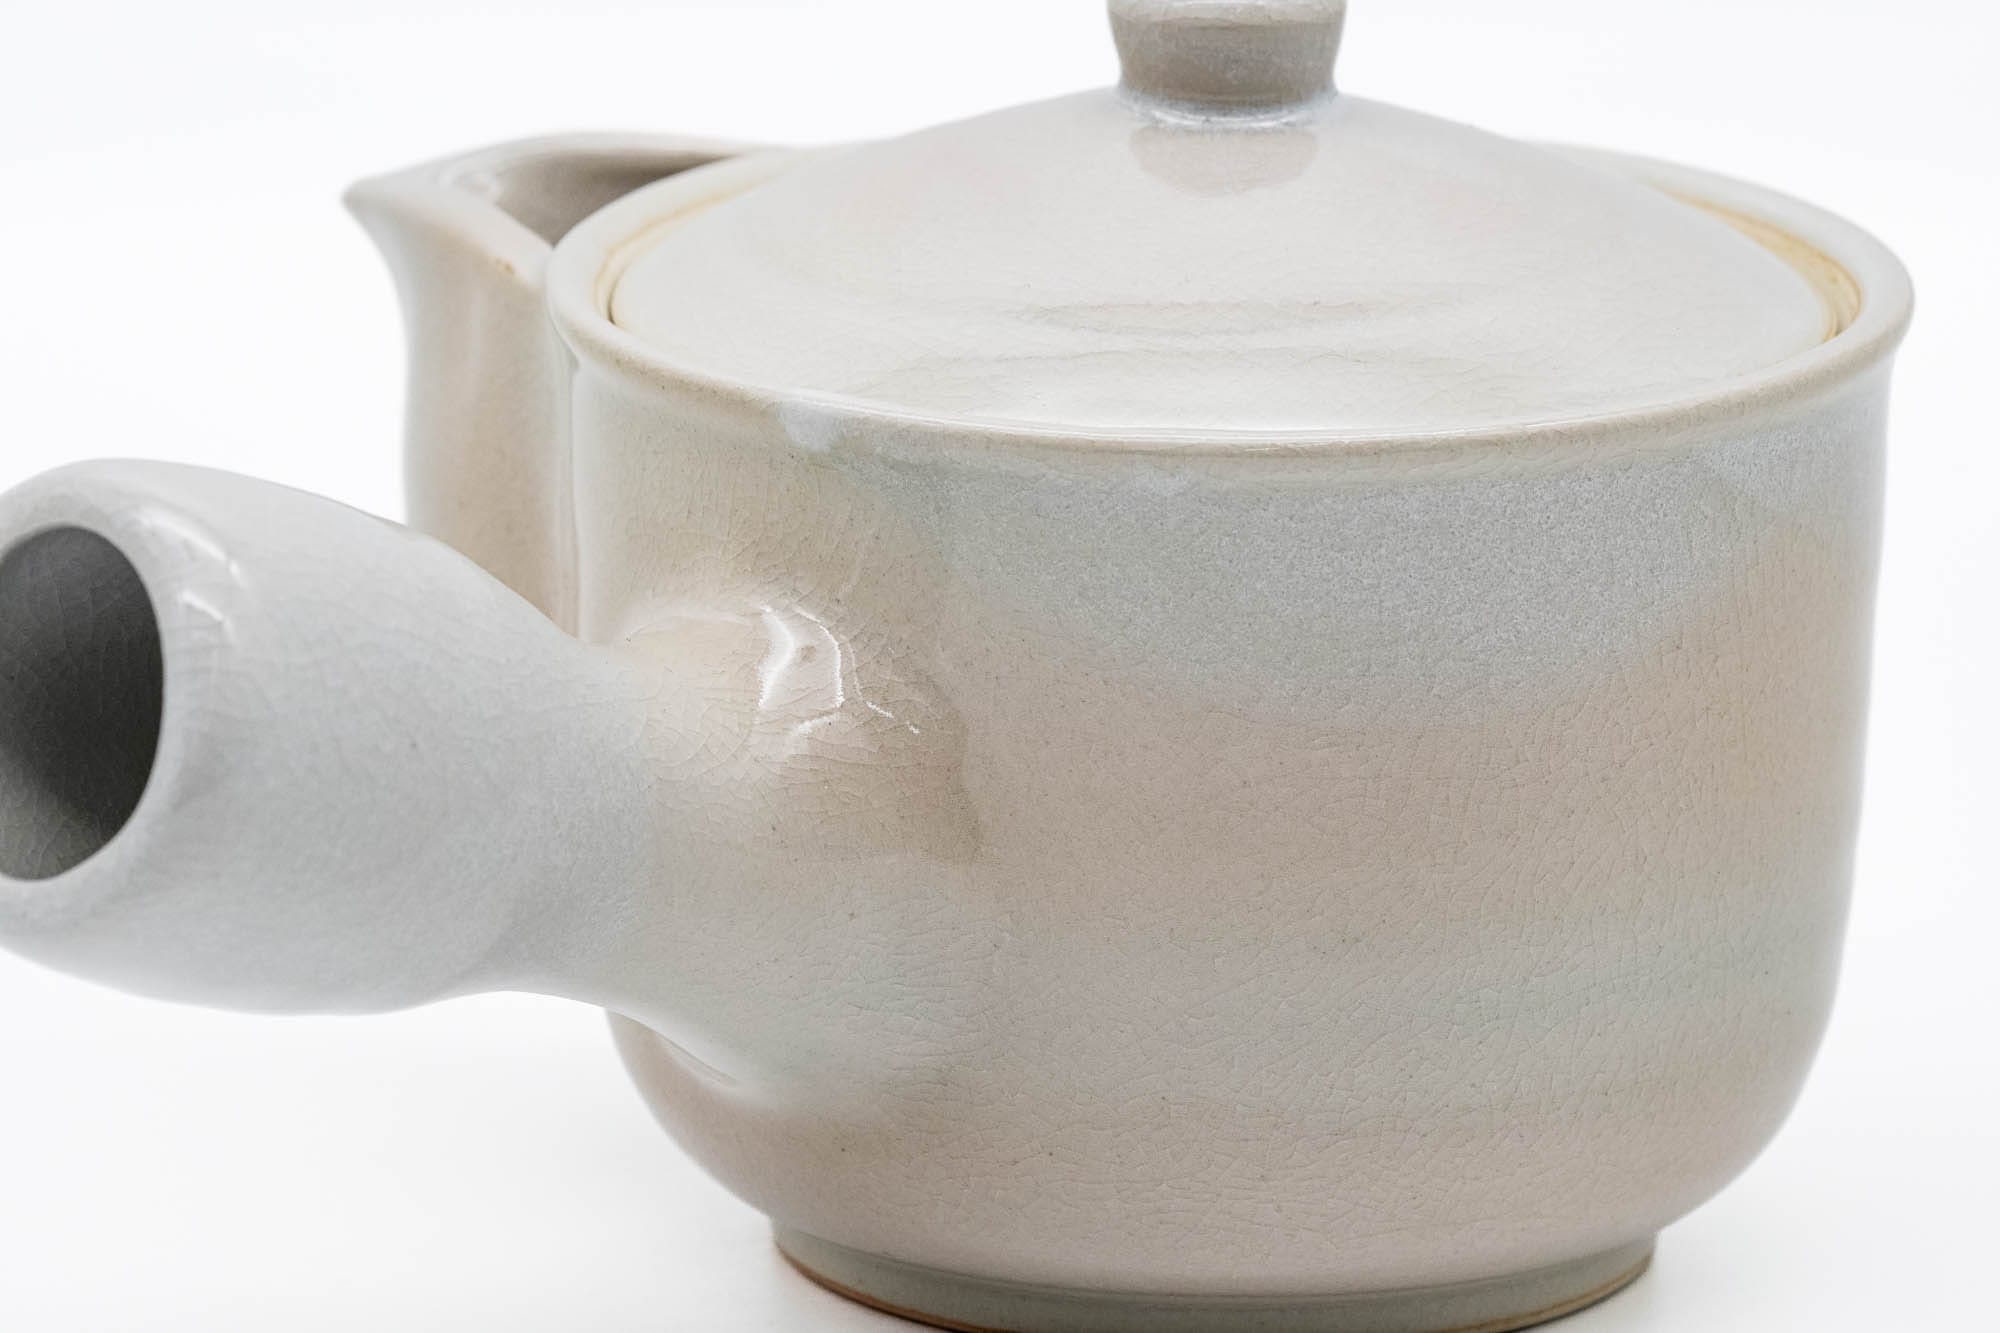 Japanese Tea Set - 椿秀窯 Tsubakihide Kiln - Hagi-yaki Kyusu Teapot with 5 Yunomi Teacups